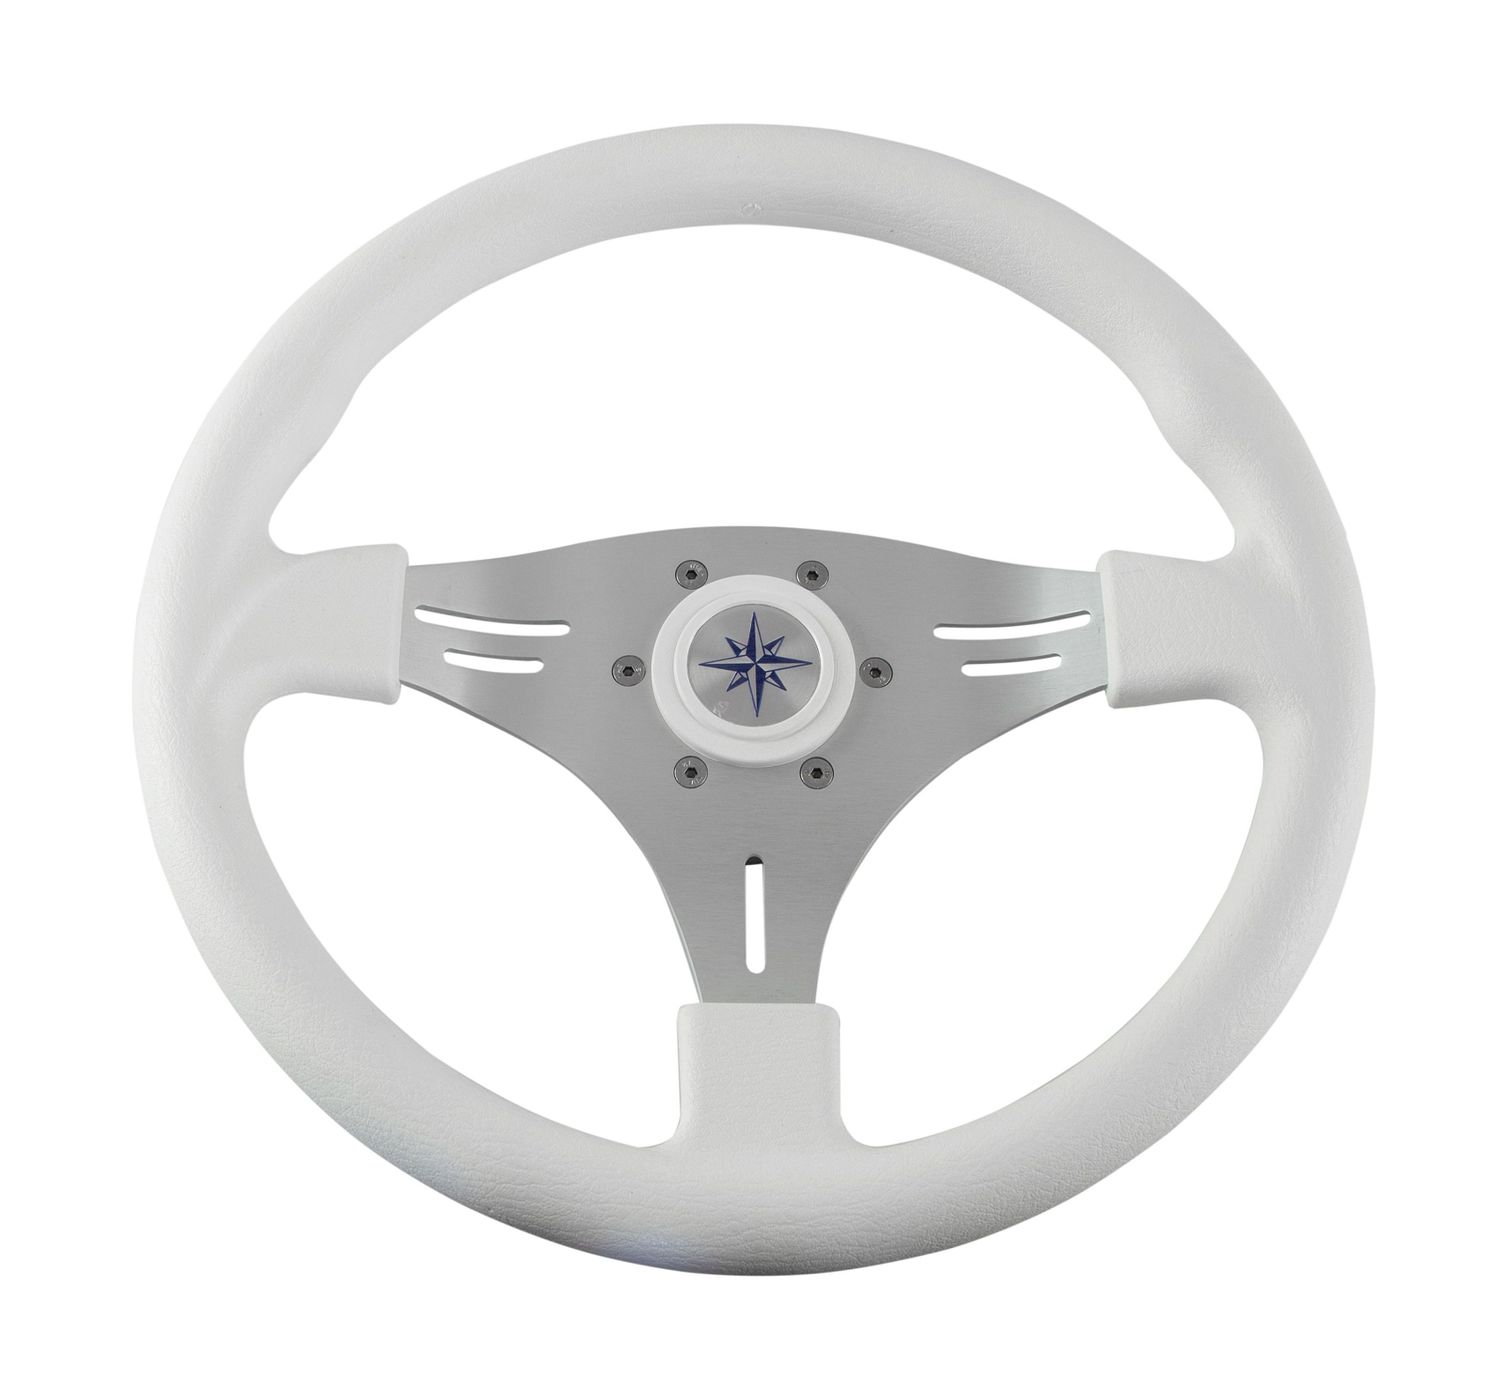 Рулевое колесо MANTA обод белый, спицы серебряные д. 355 мм VN70551-08 рулевое колесо matrix белый обод more 10016474